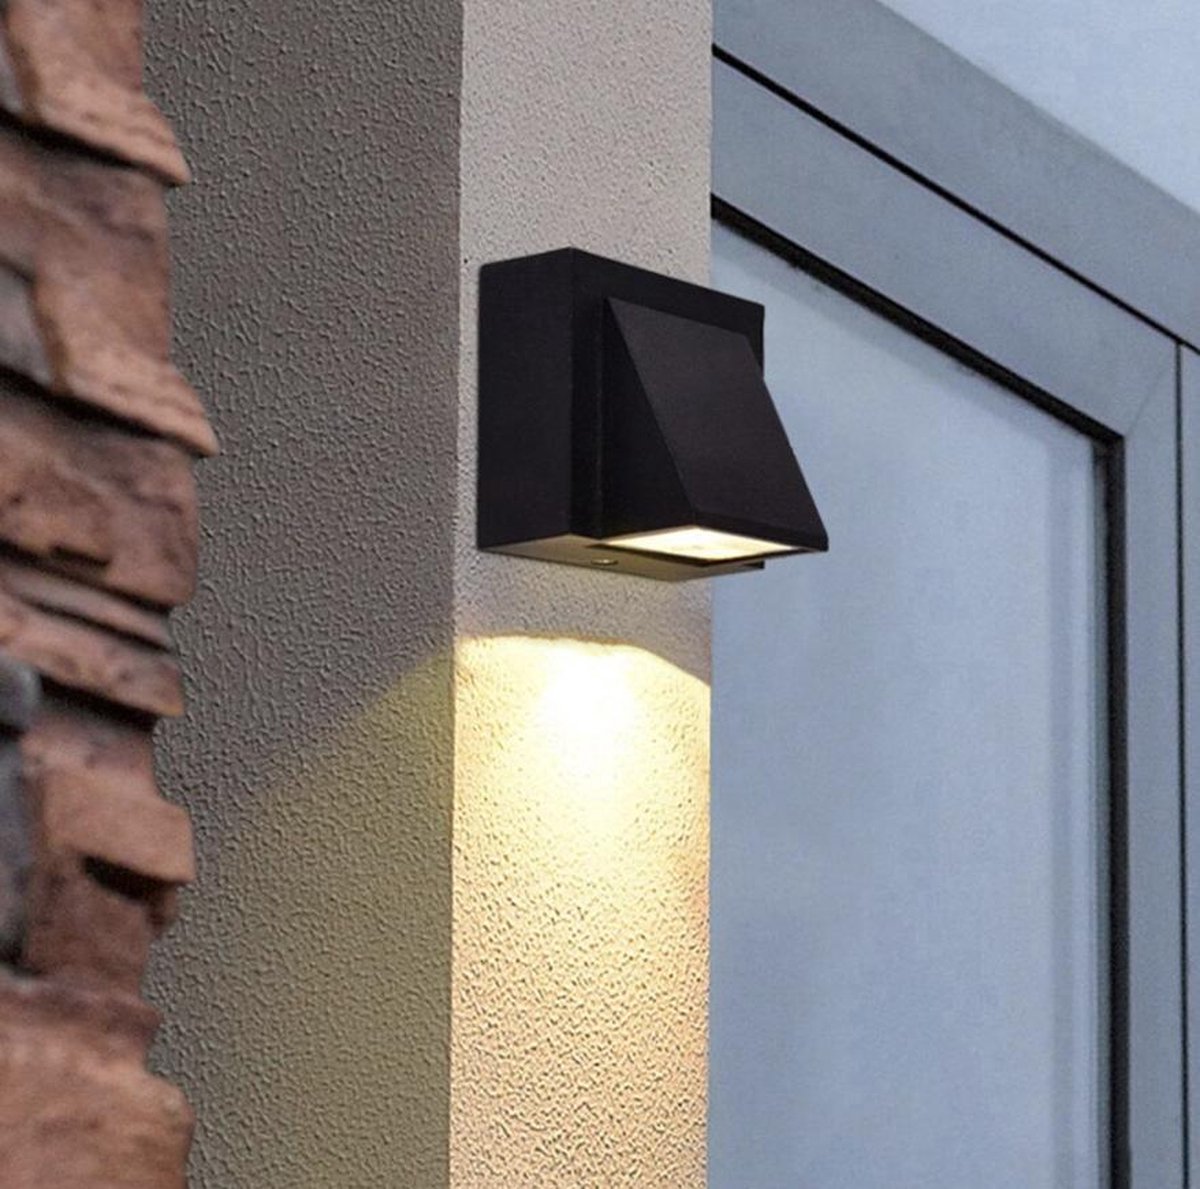 Wandlamp overkapping - buitenlamp - wandspot - buitenlamp led - voordeur lamp - Merkloos